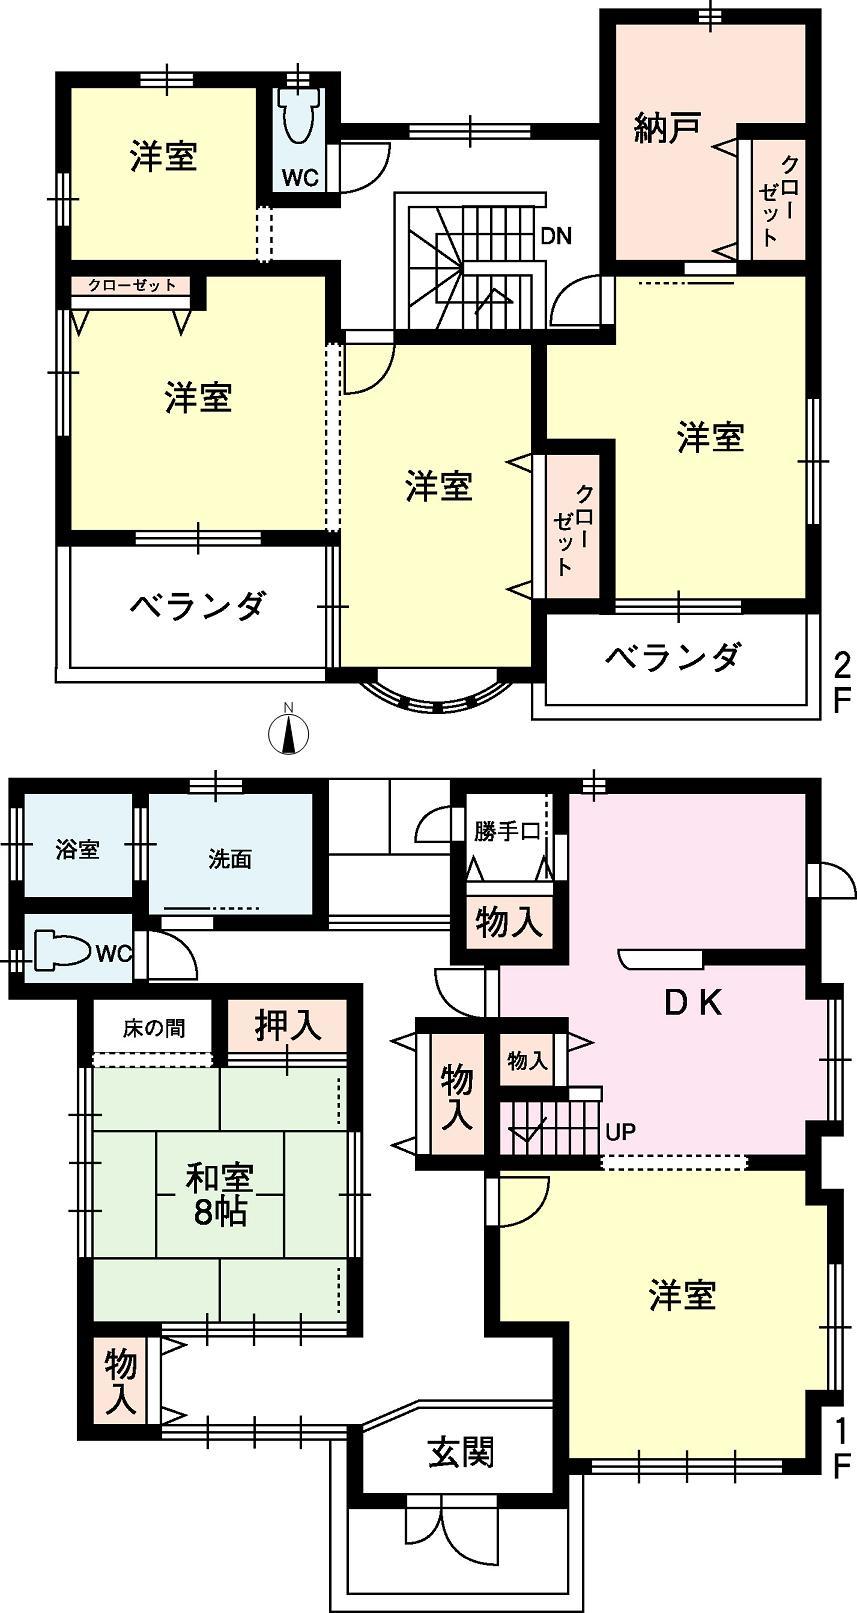 Floor plan. 39,800,000 yen, 3LDK + 2S (storeroom), Land area 233.94 sq m , Building area 185.71 sq m